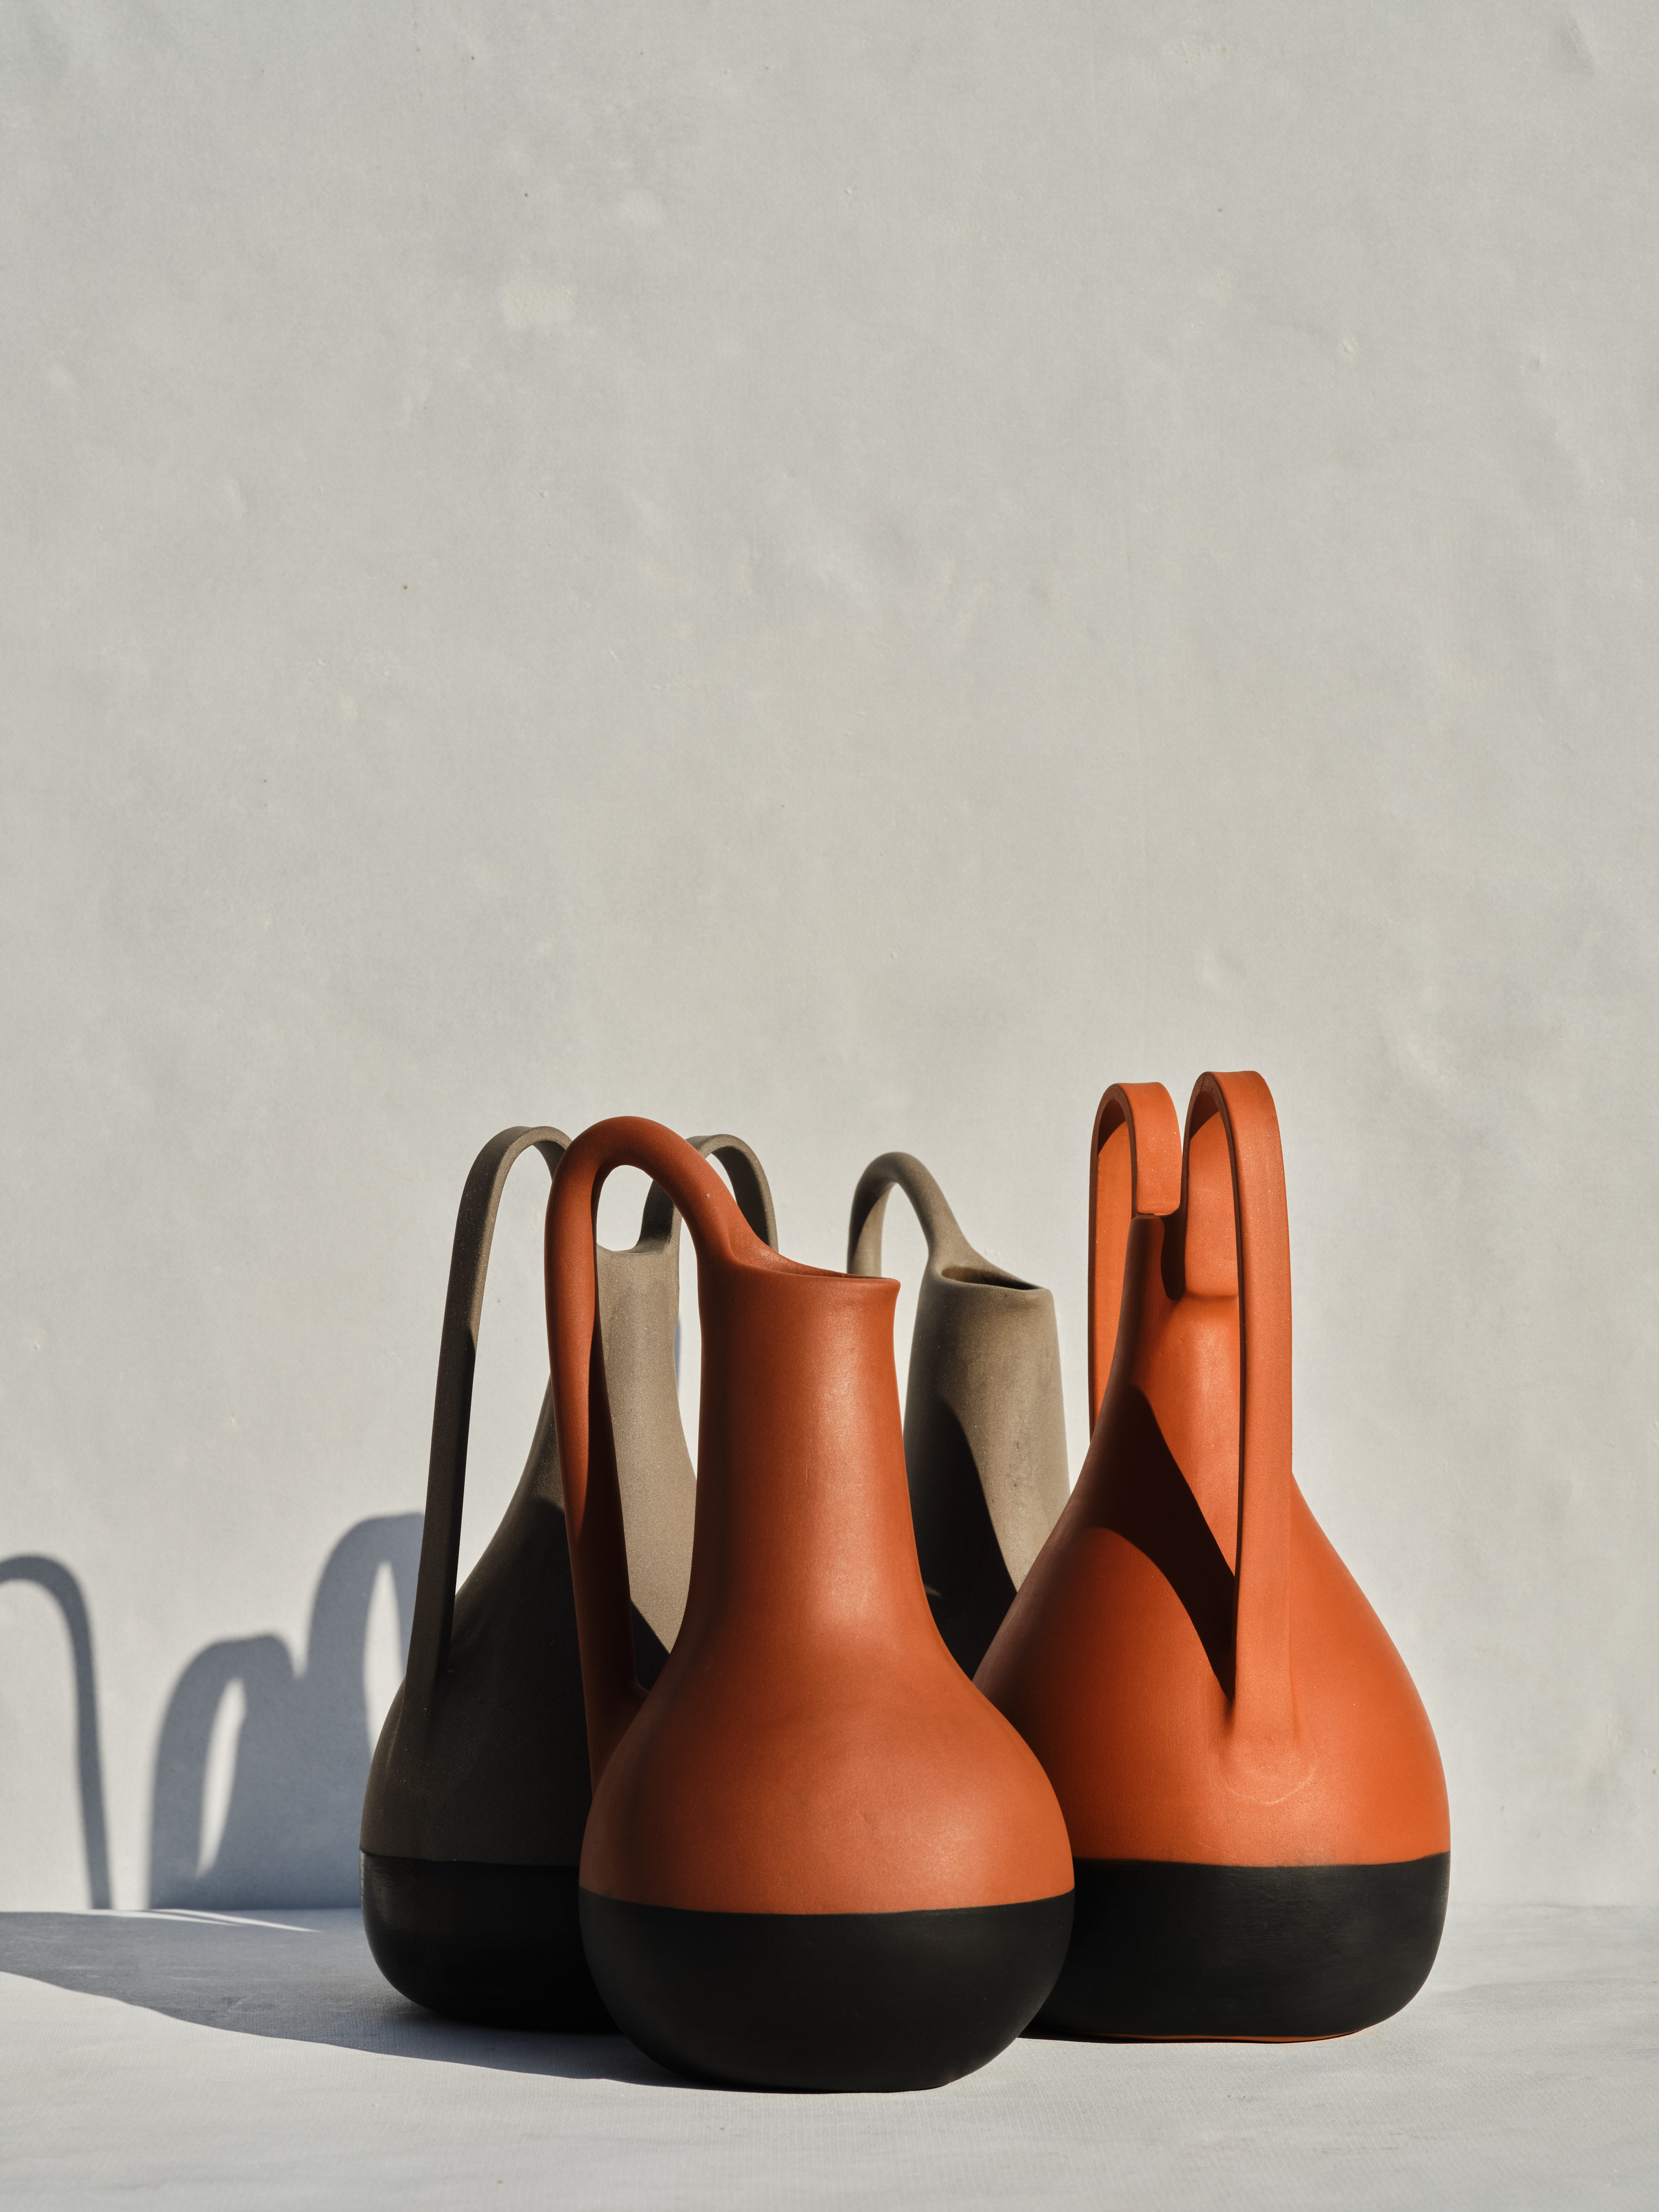 'OLPE' & 'PYTHOS' - Ceramic vases